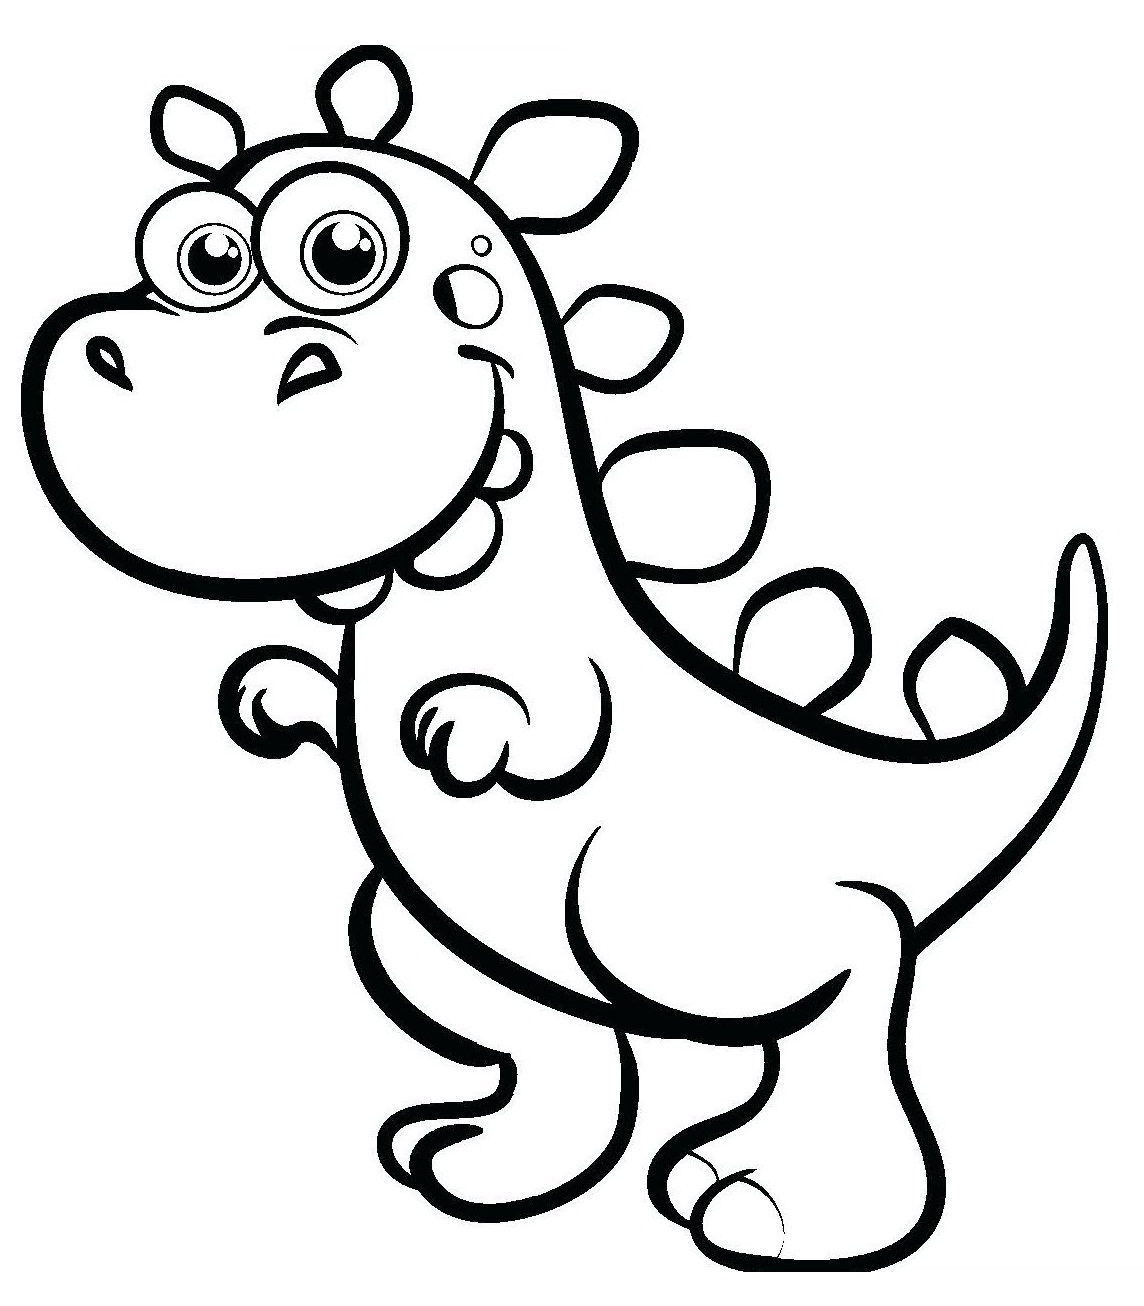 Раскраска прекрасный динозавр - Бесплатнo Pаспечатать или Cкачать Oнлайн